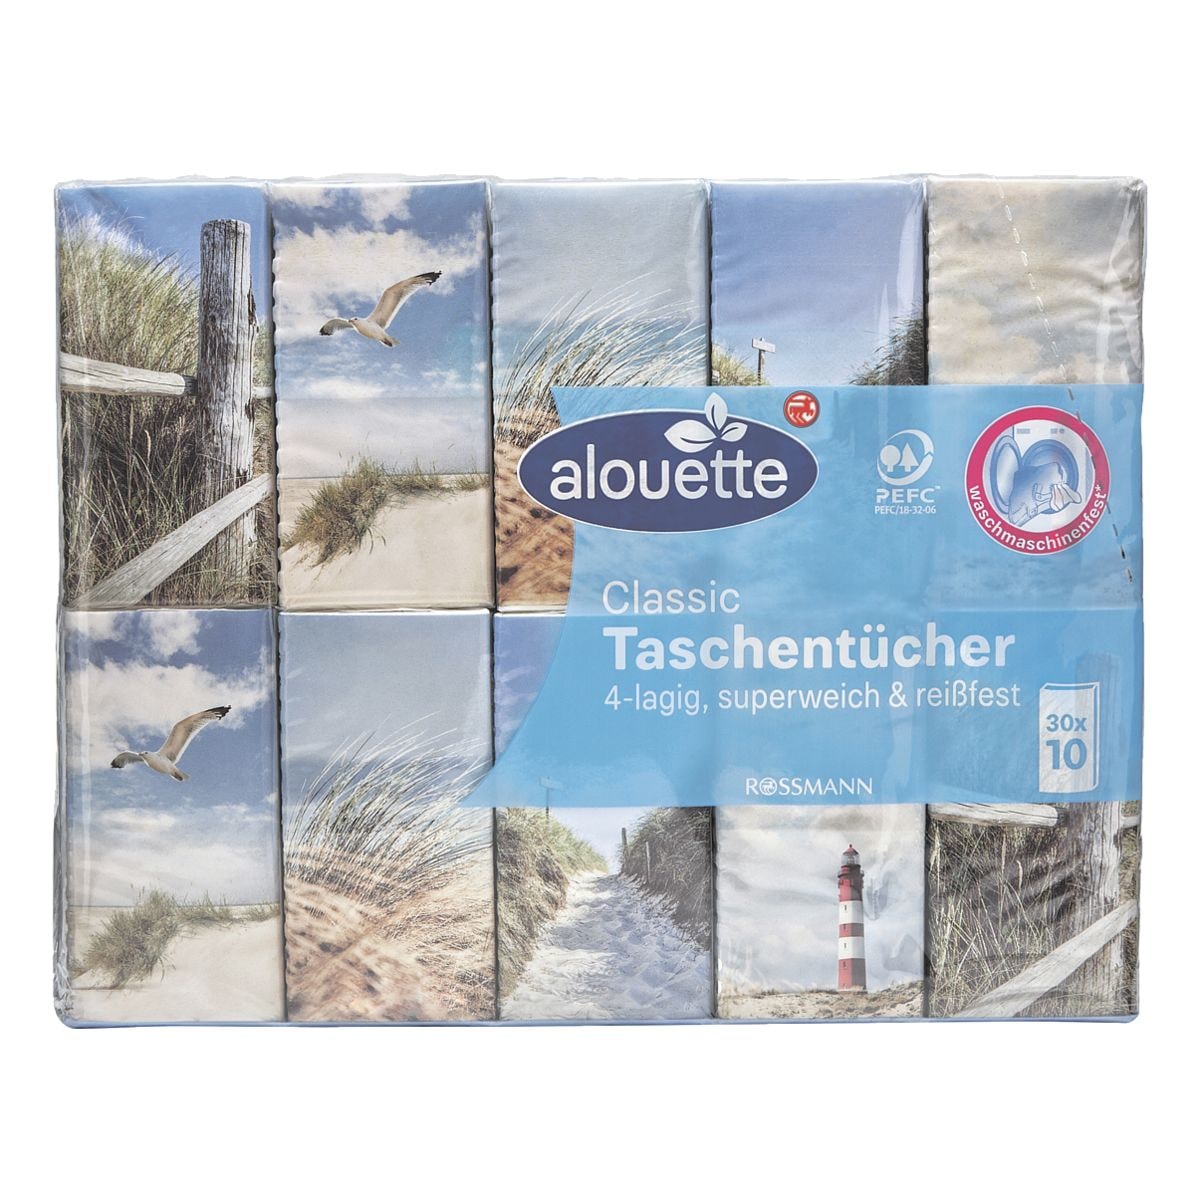 alouette 30x10 Stck Kleinpackungen Taschentcher (waschmaschinenfest)